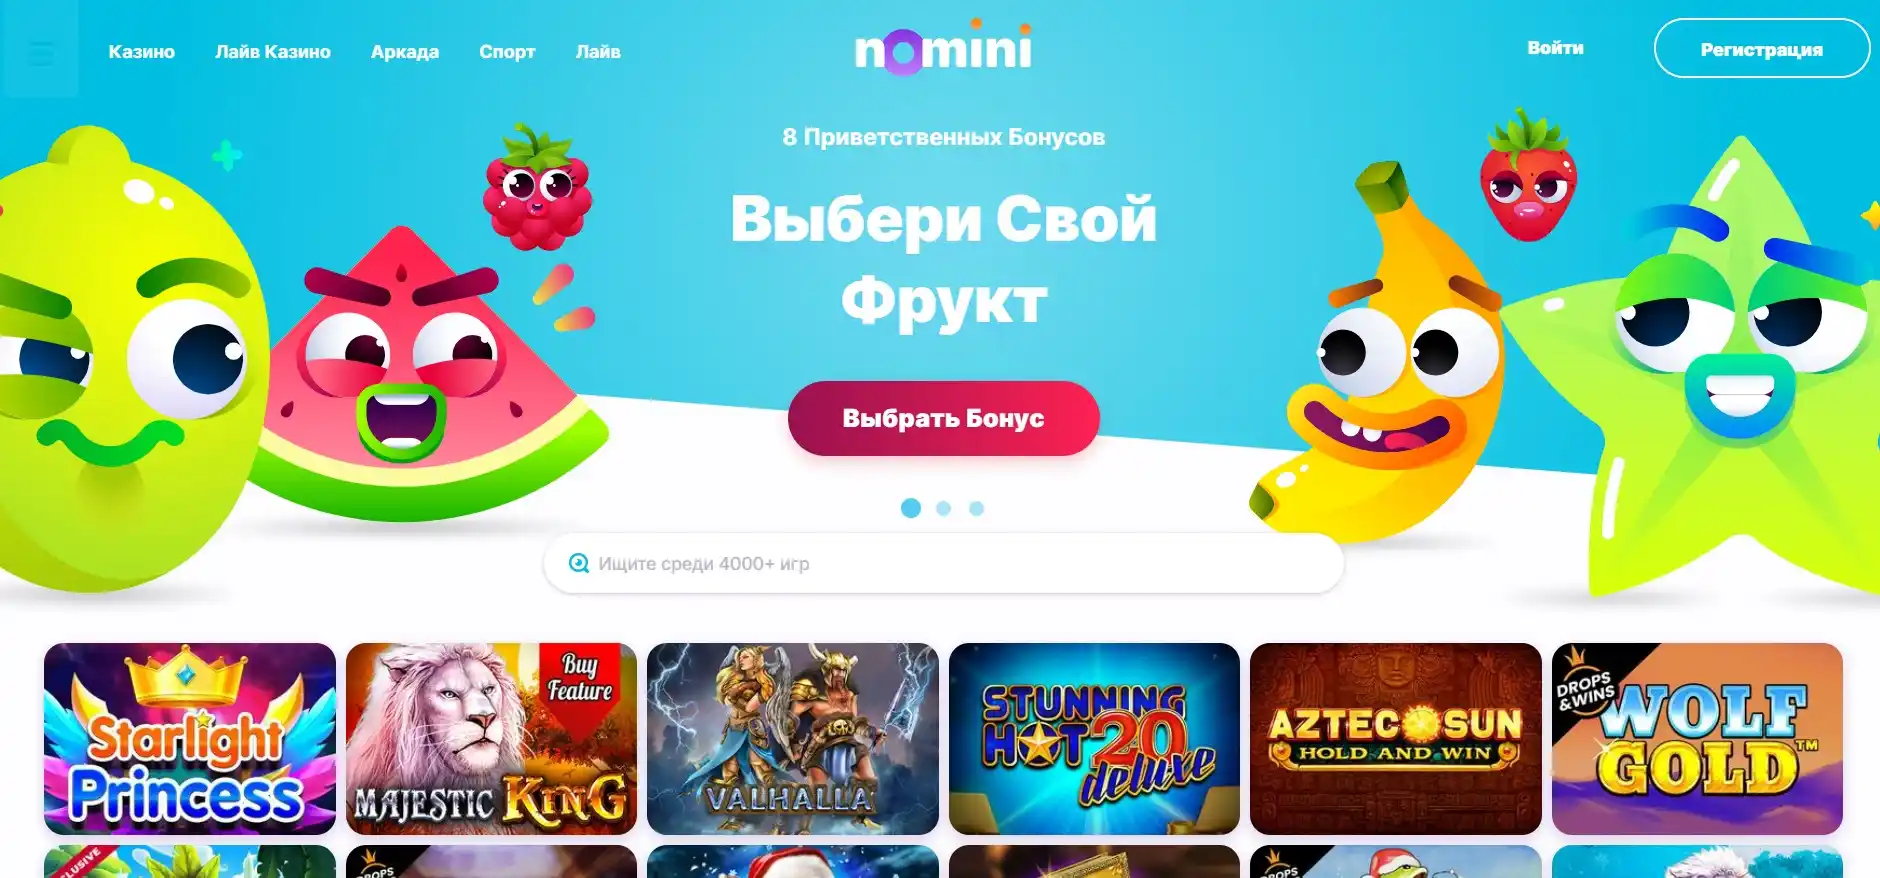 Nomini онлайн казино Украина